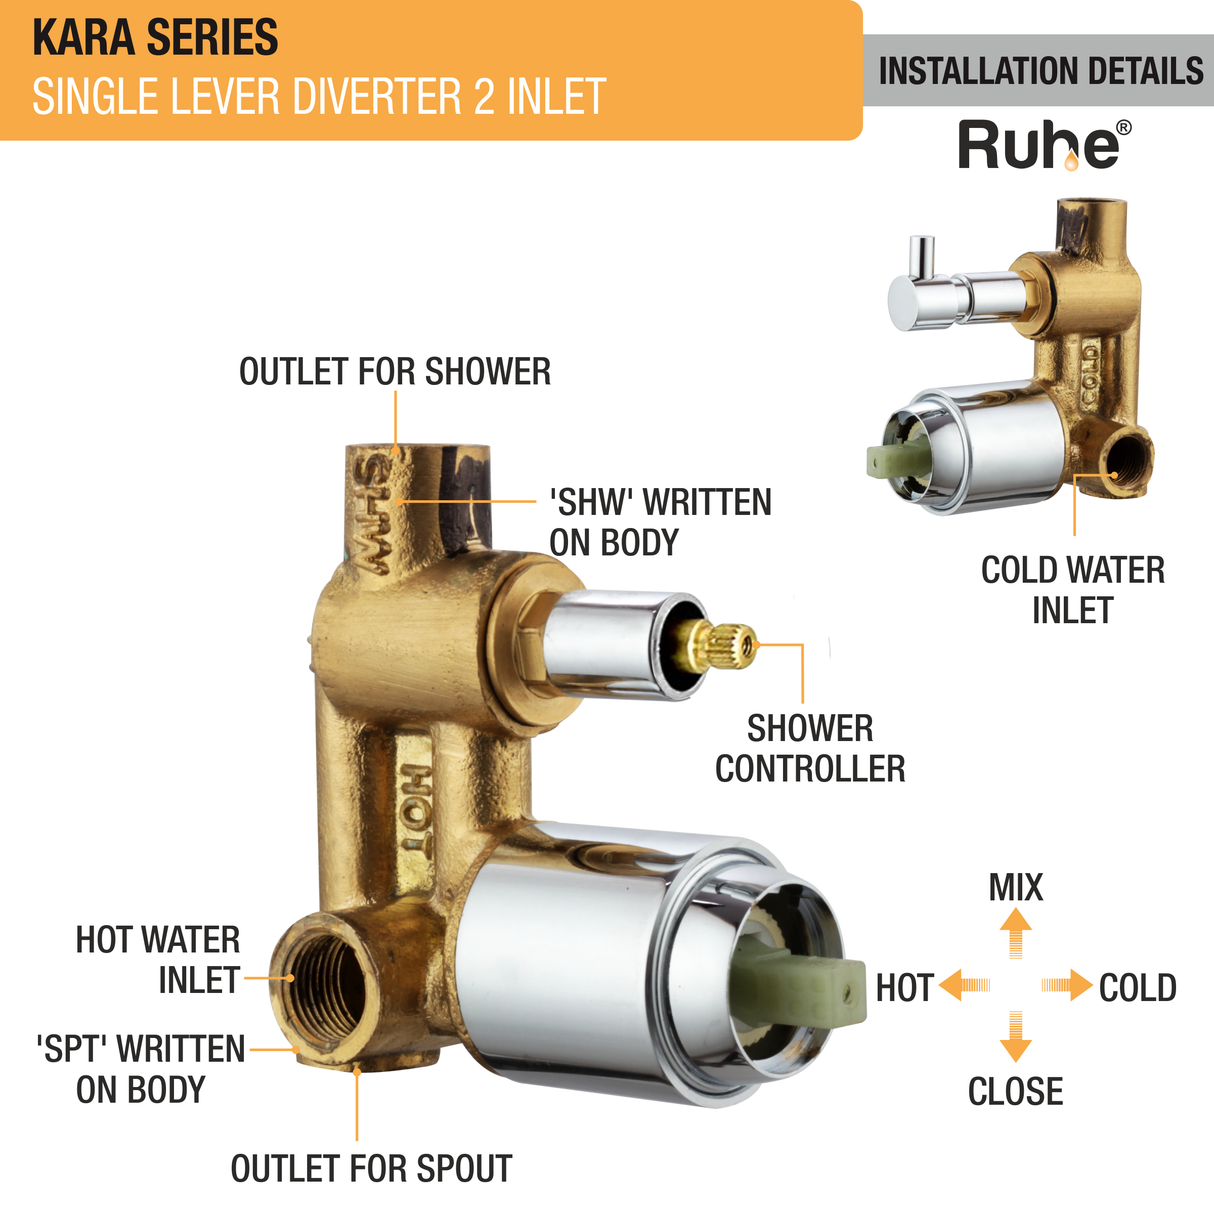 Kara Single Lever Diverter 2 Inlet Complete Faucet installation